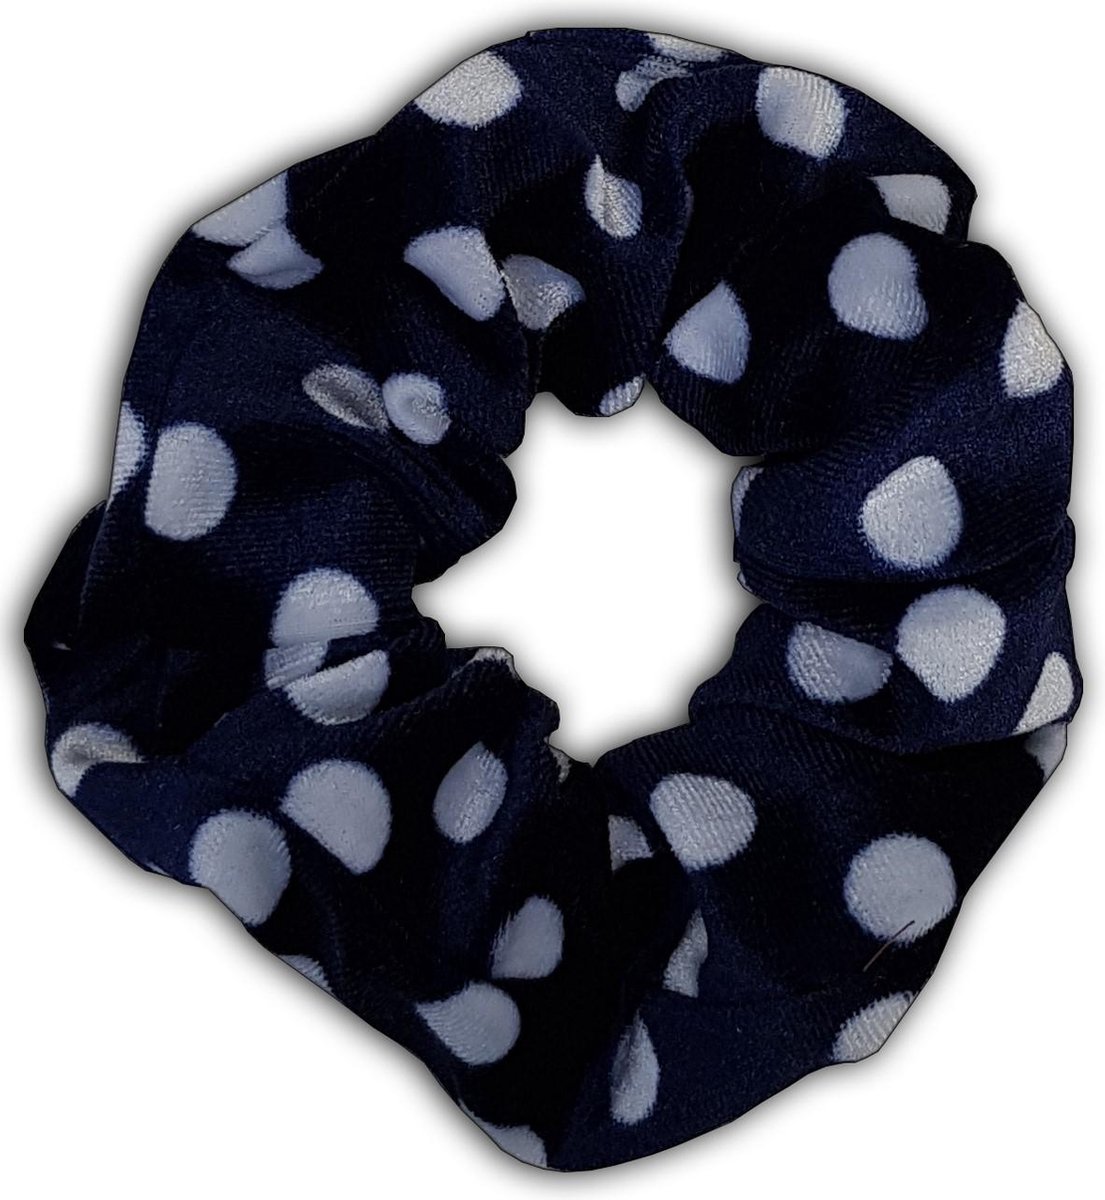 Topkwaliteit Scrunchie / Haarwokkel / Haarelastiek / Velvet haarband met stippen, Fluweel zacht - Blauw met witte stippen